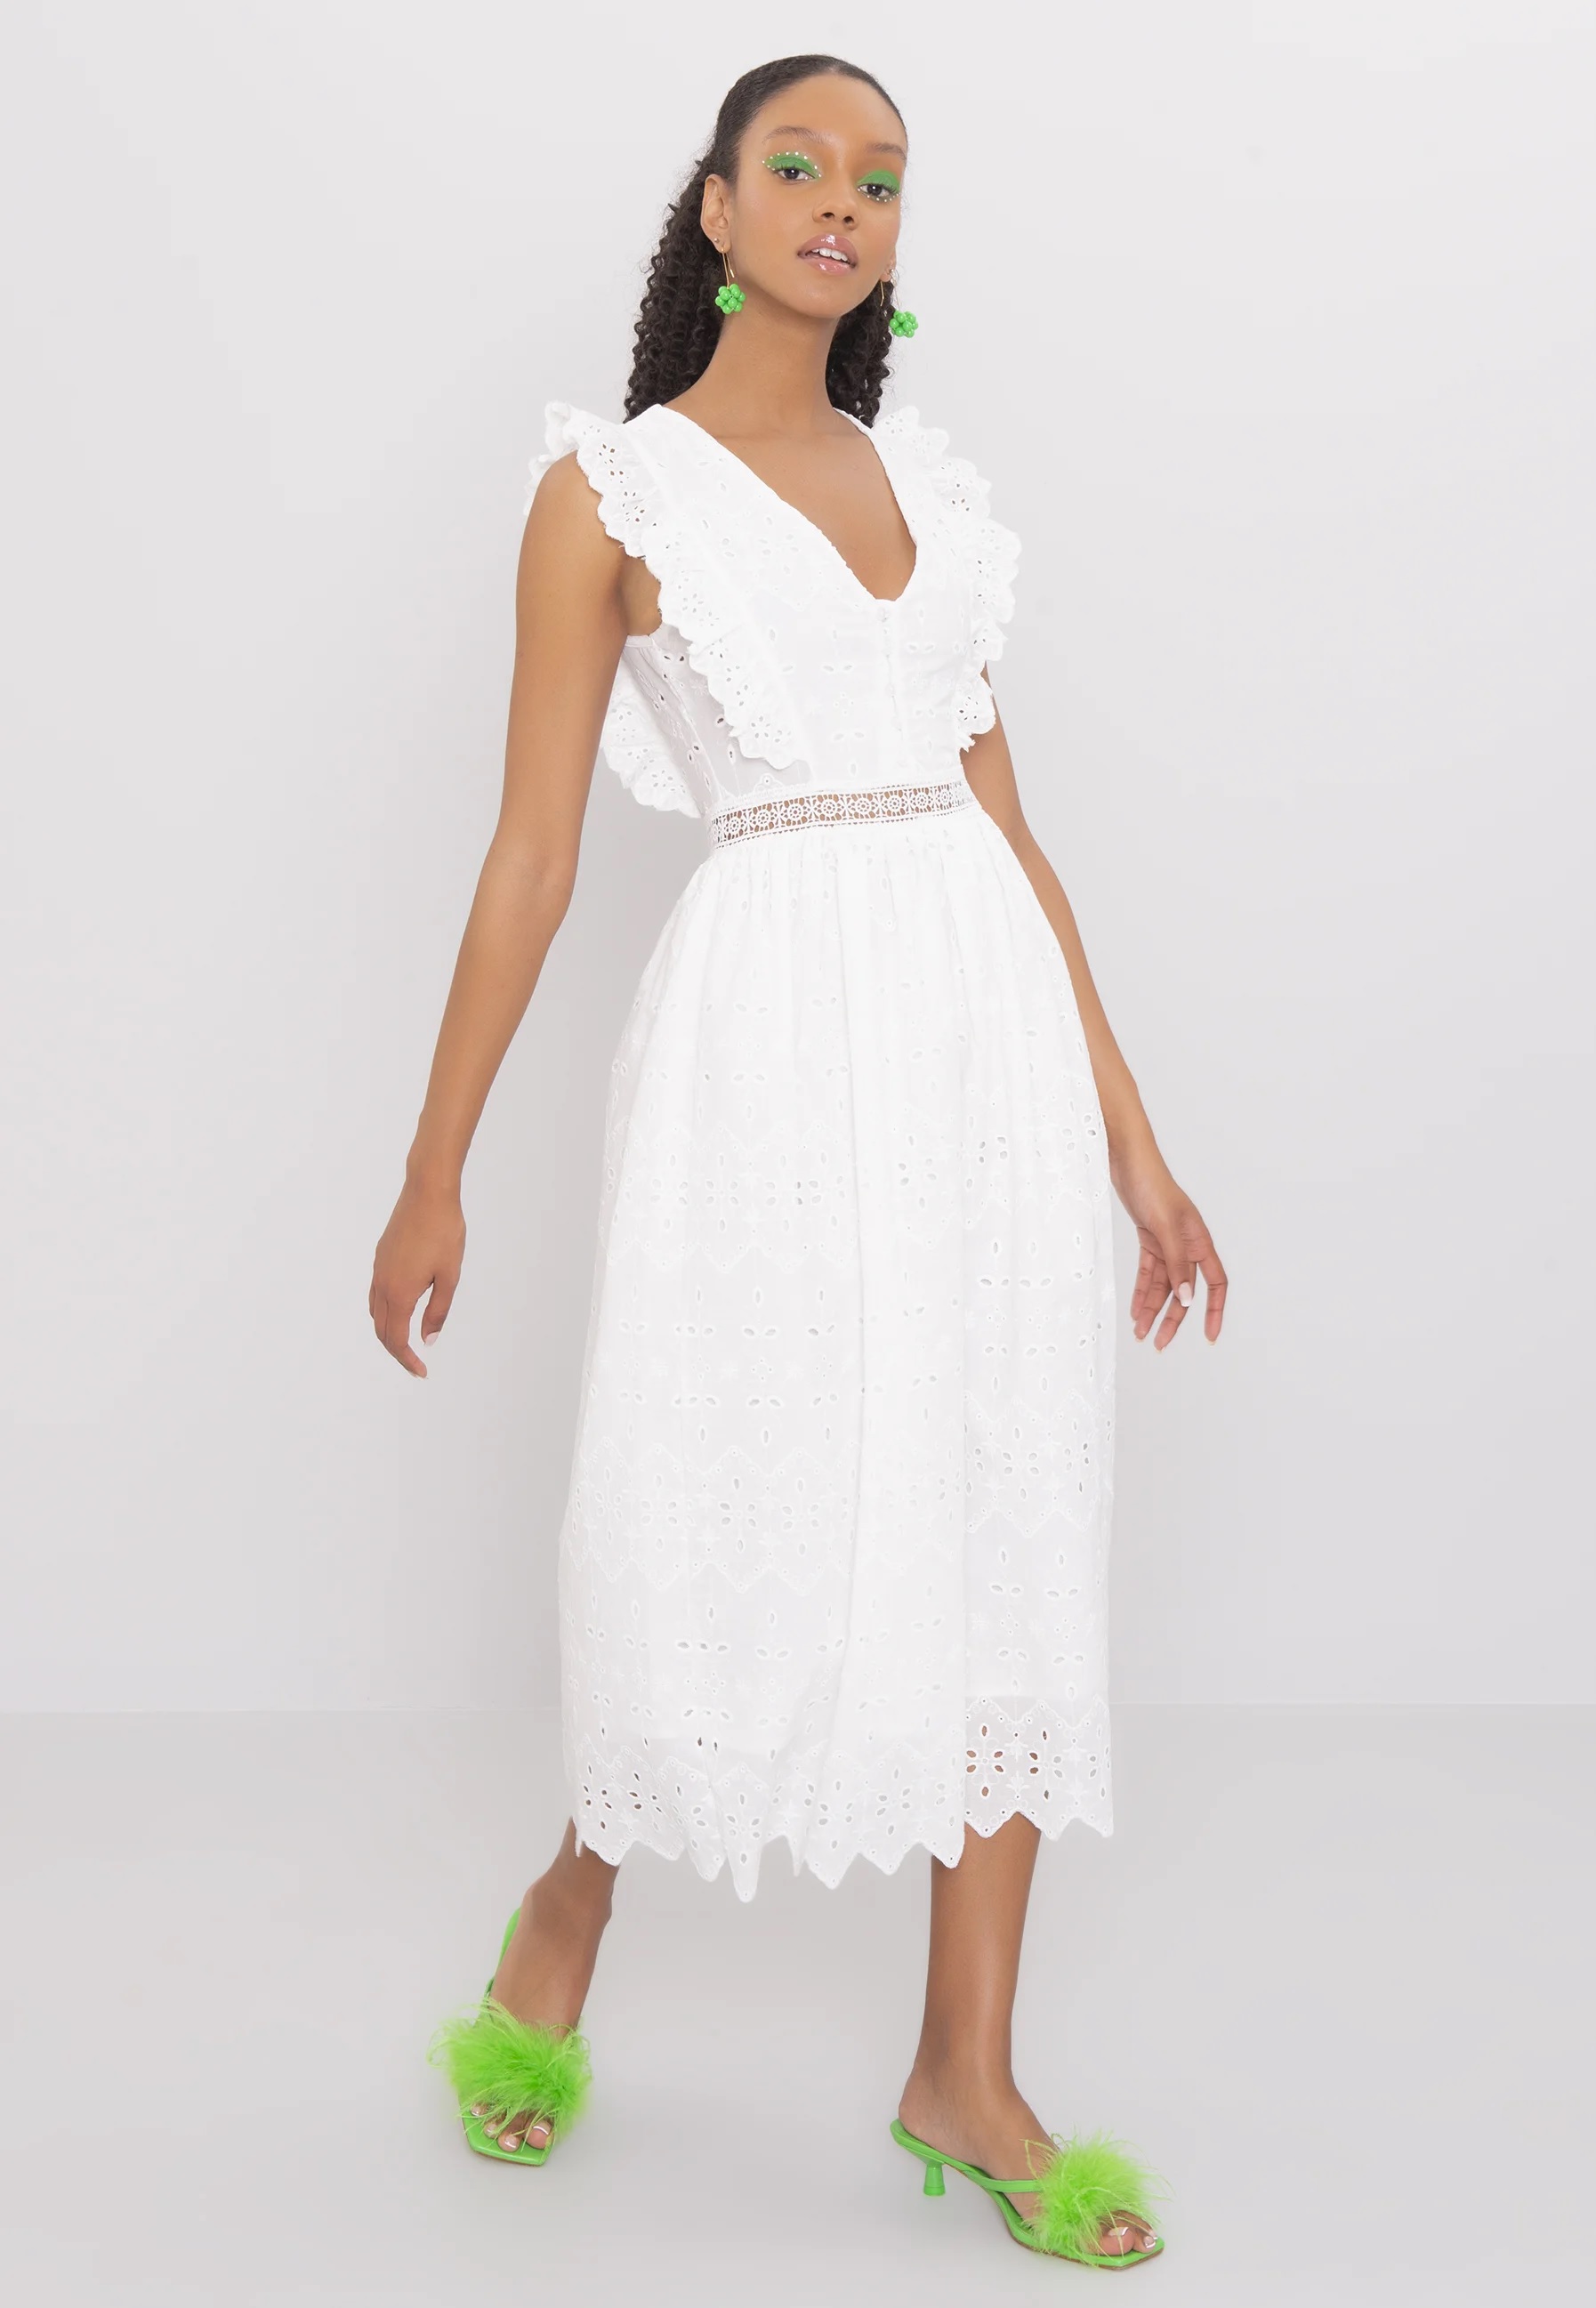 Hvide kjoler: Se de 21 bedste hvide kjoler nu - ALT.dk